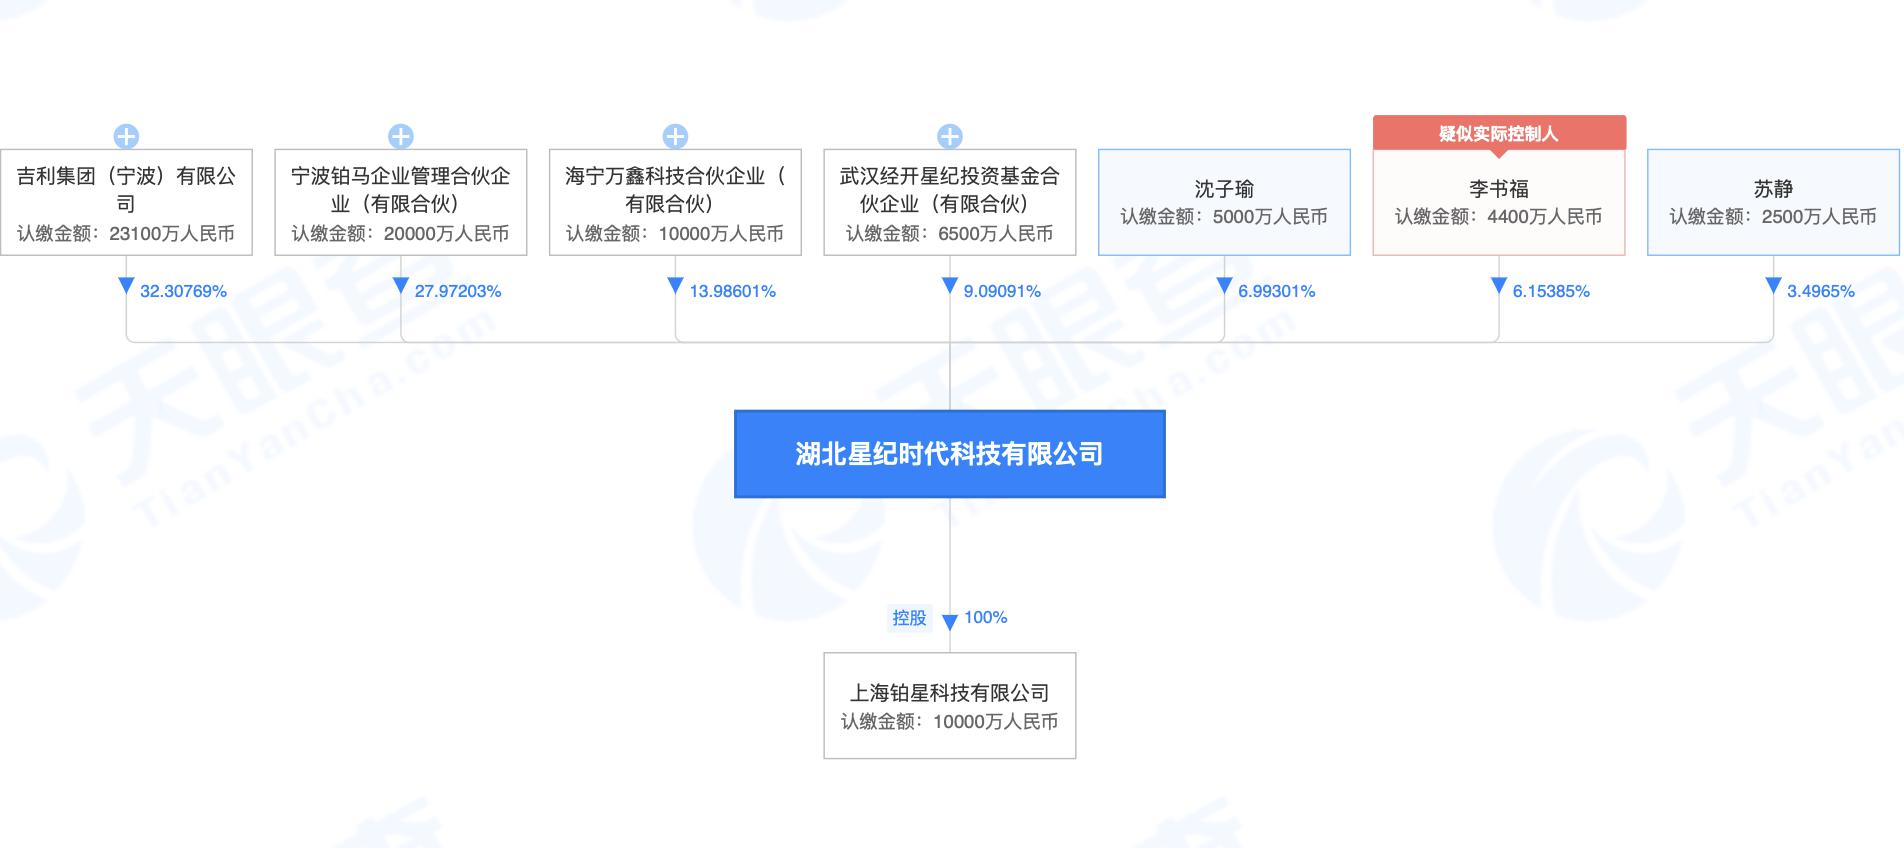 李书福旗下企业设立北京元星纪，经营范围包括VR设备制造